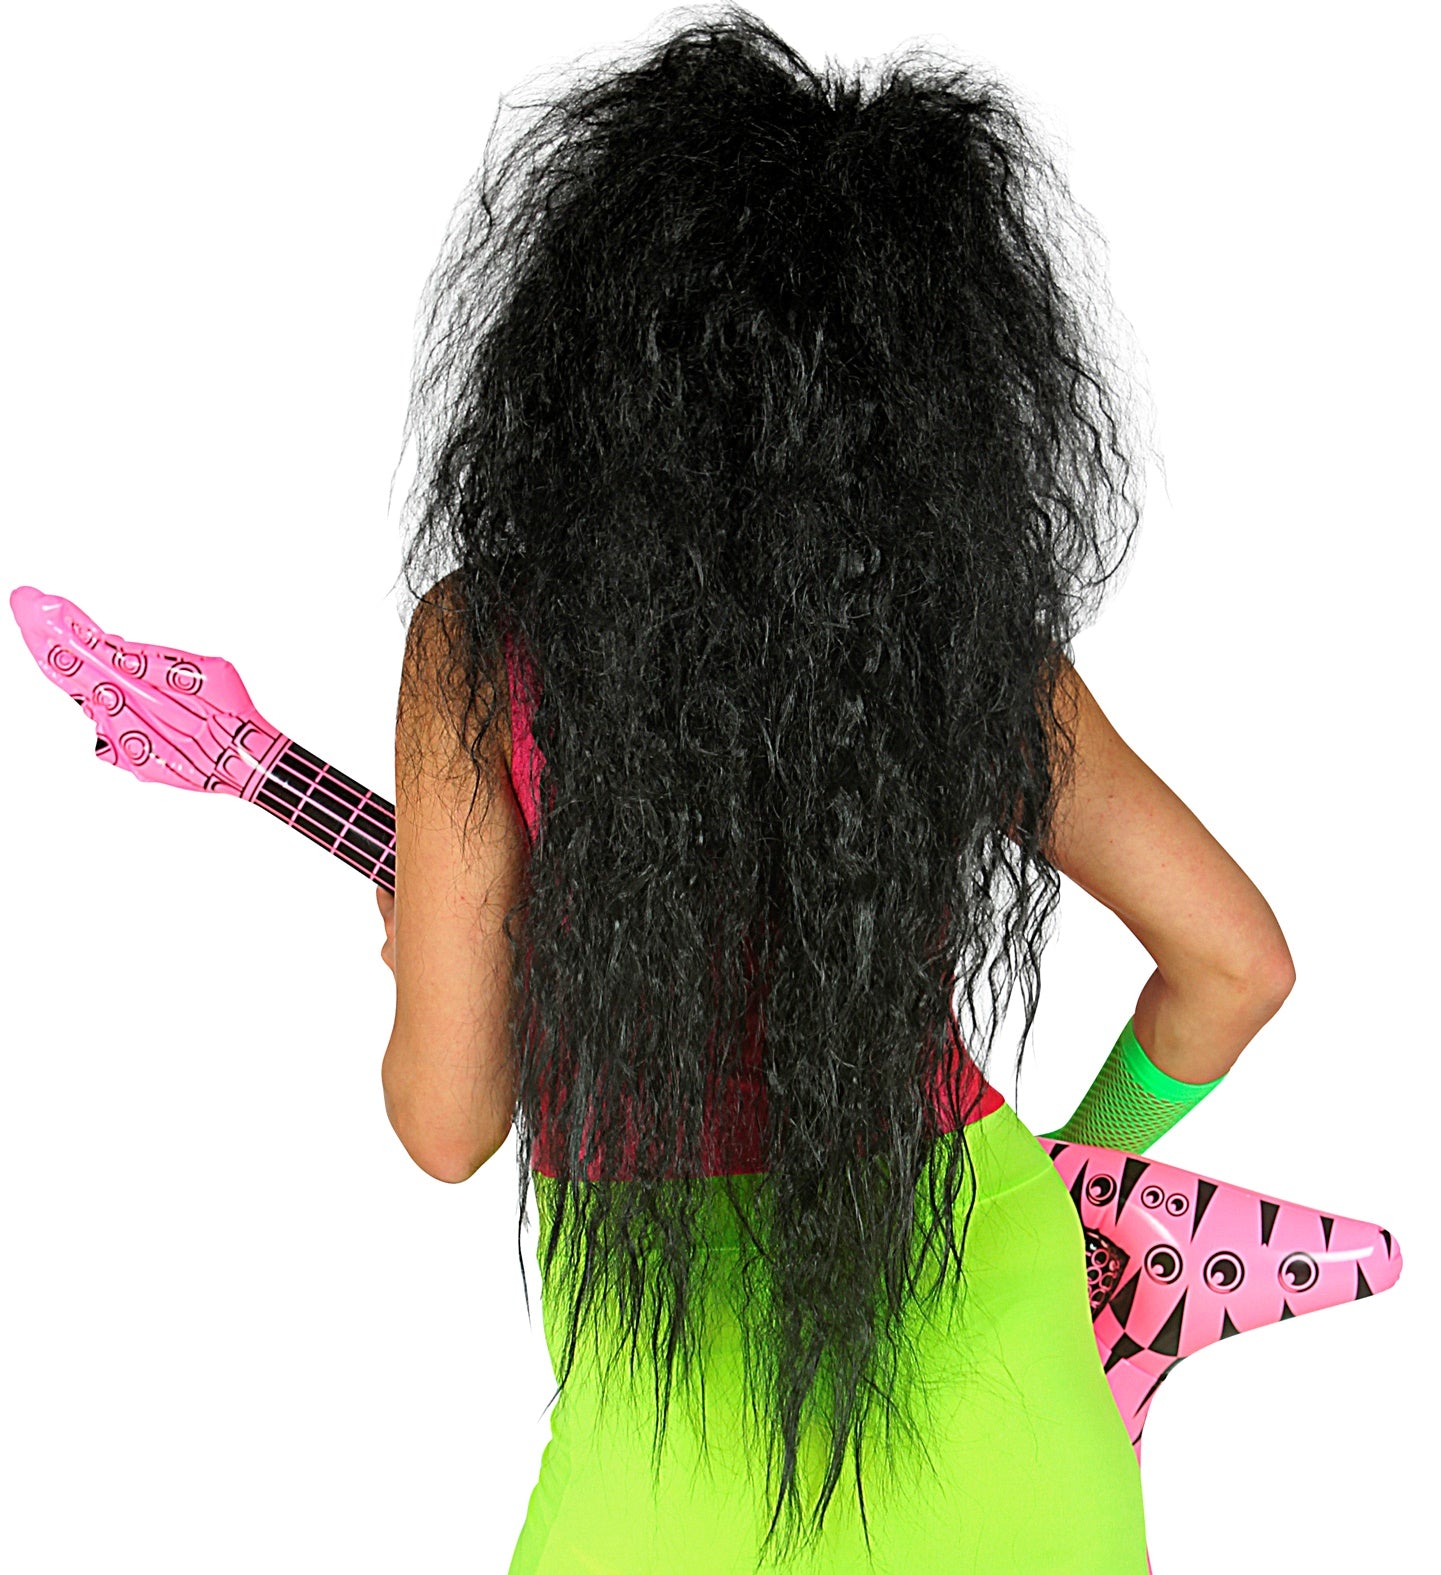 Black Oversized Rock Star Wig rear